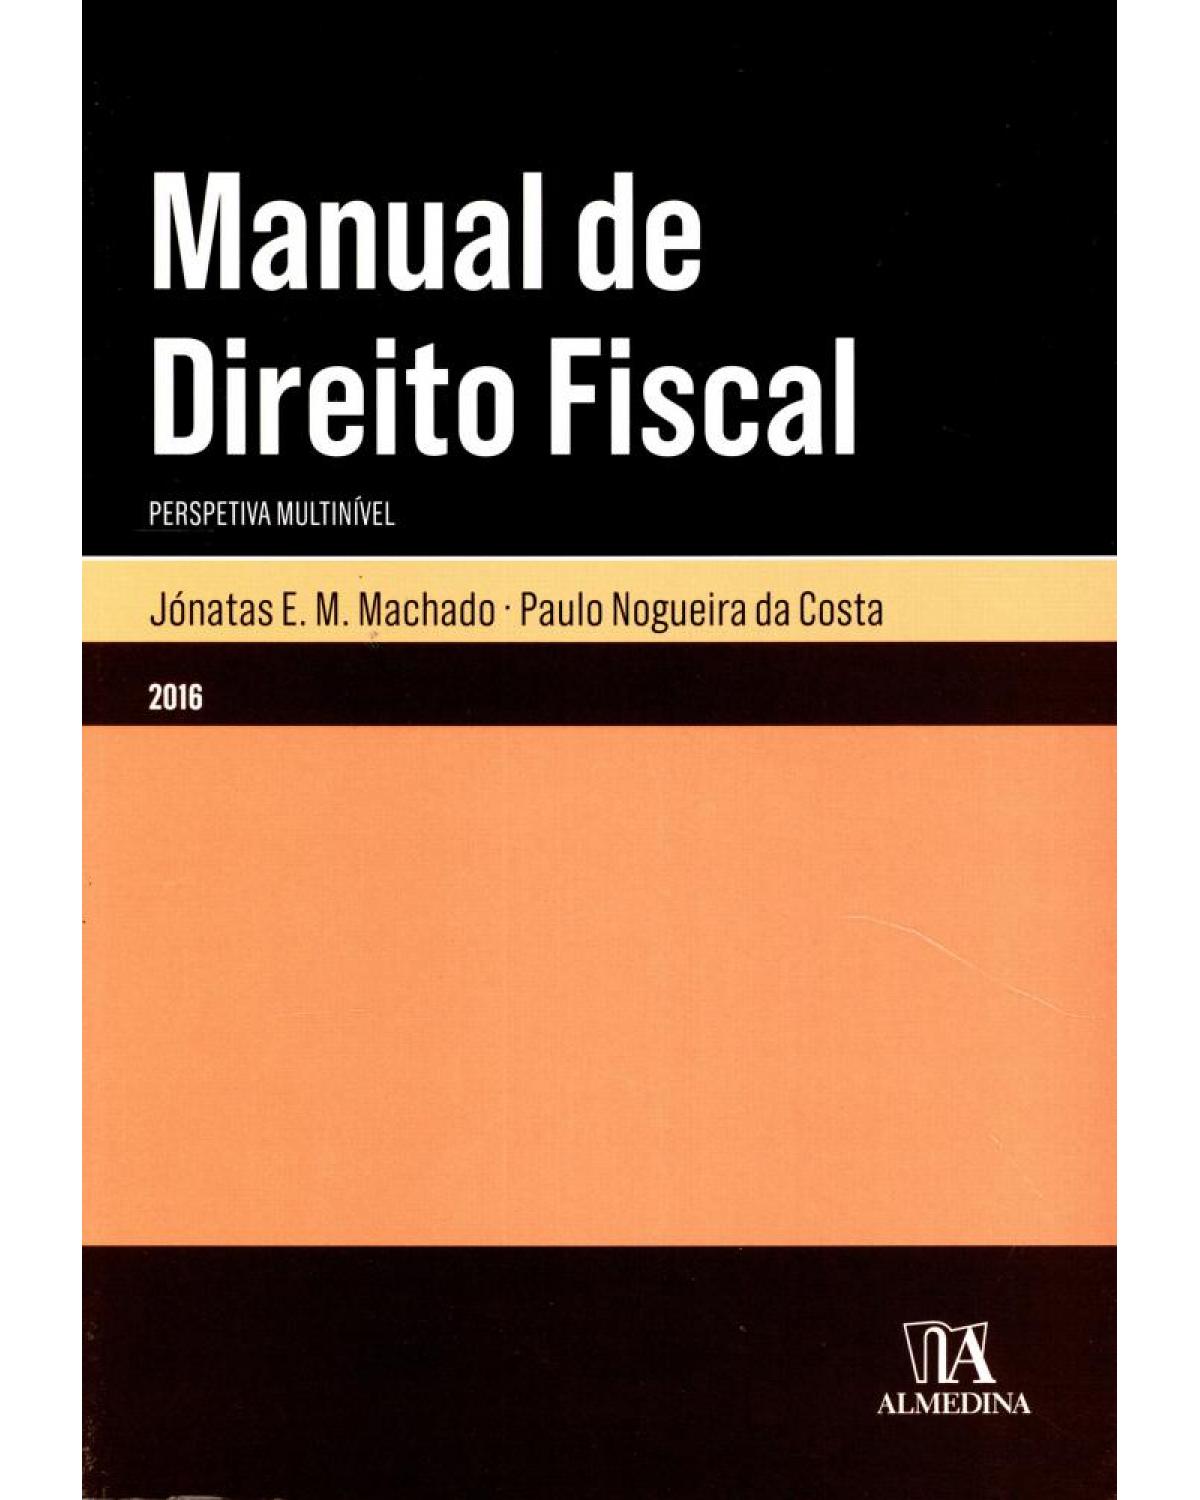 Manual de direito fiscal - perspetiva multinível - 1ª Edição | 2016